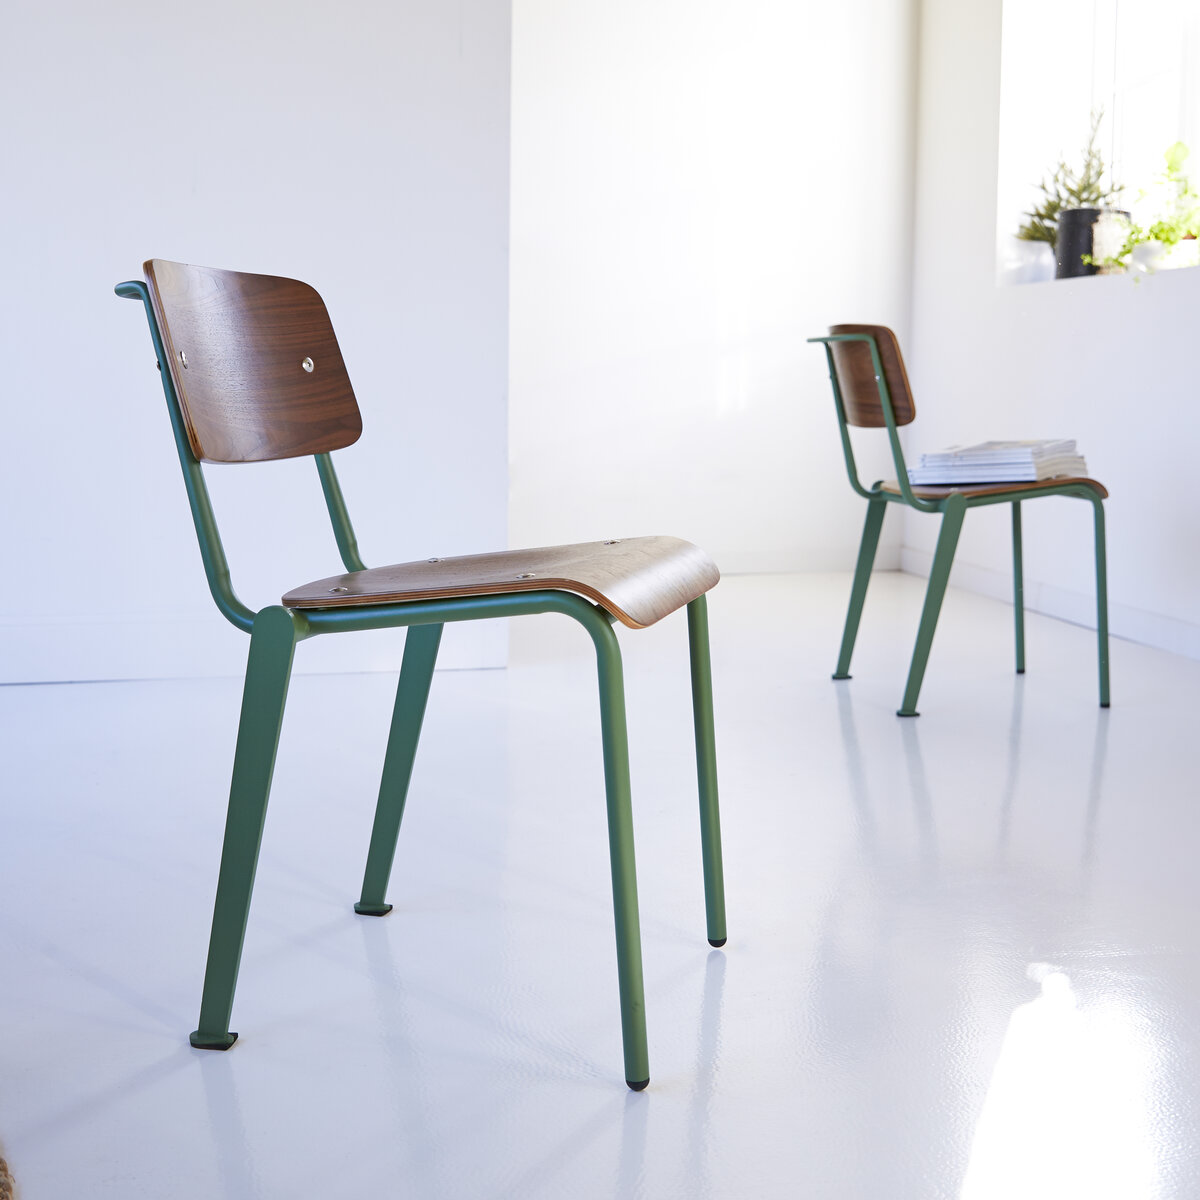 Mio - Stuhl aus Walnuss und Metall lichen